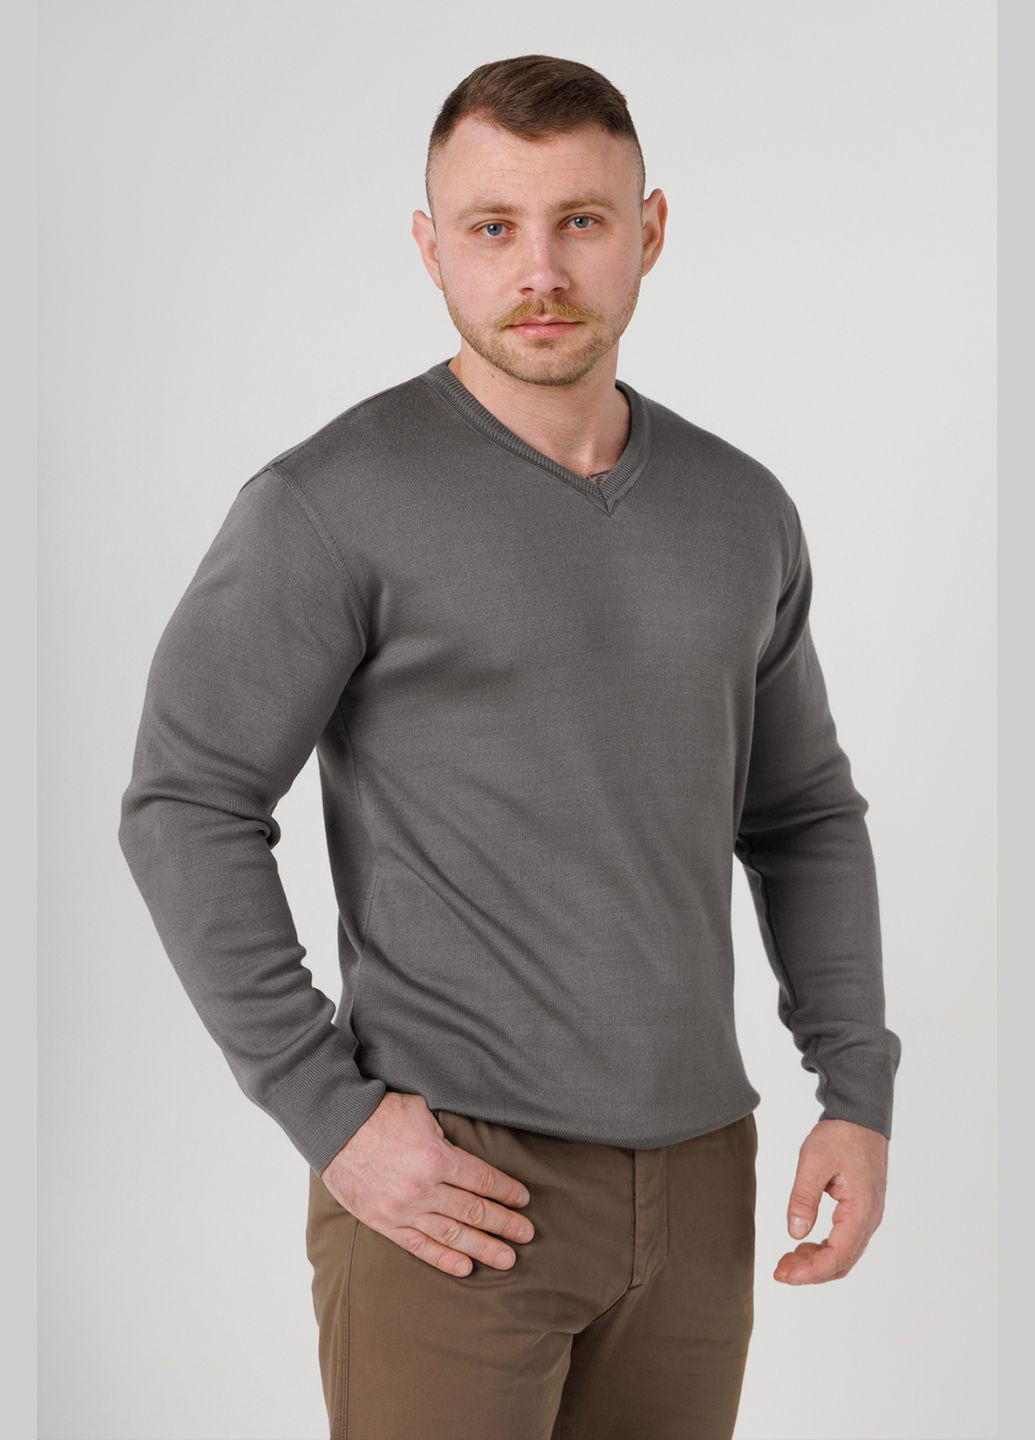 Серый демисезонный пуловер пуловер Akin Trico